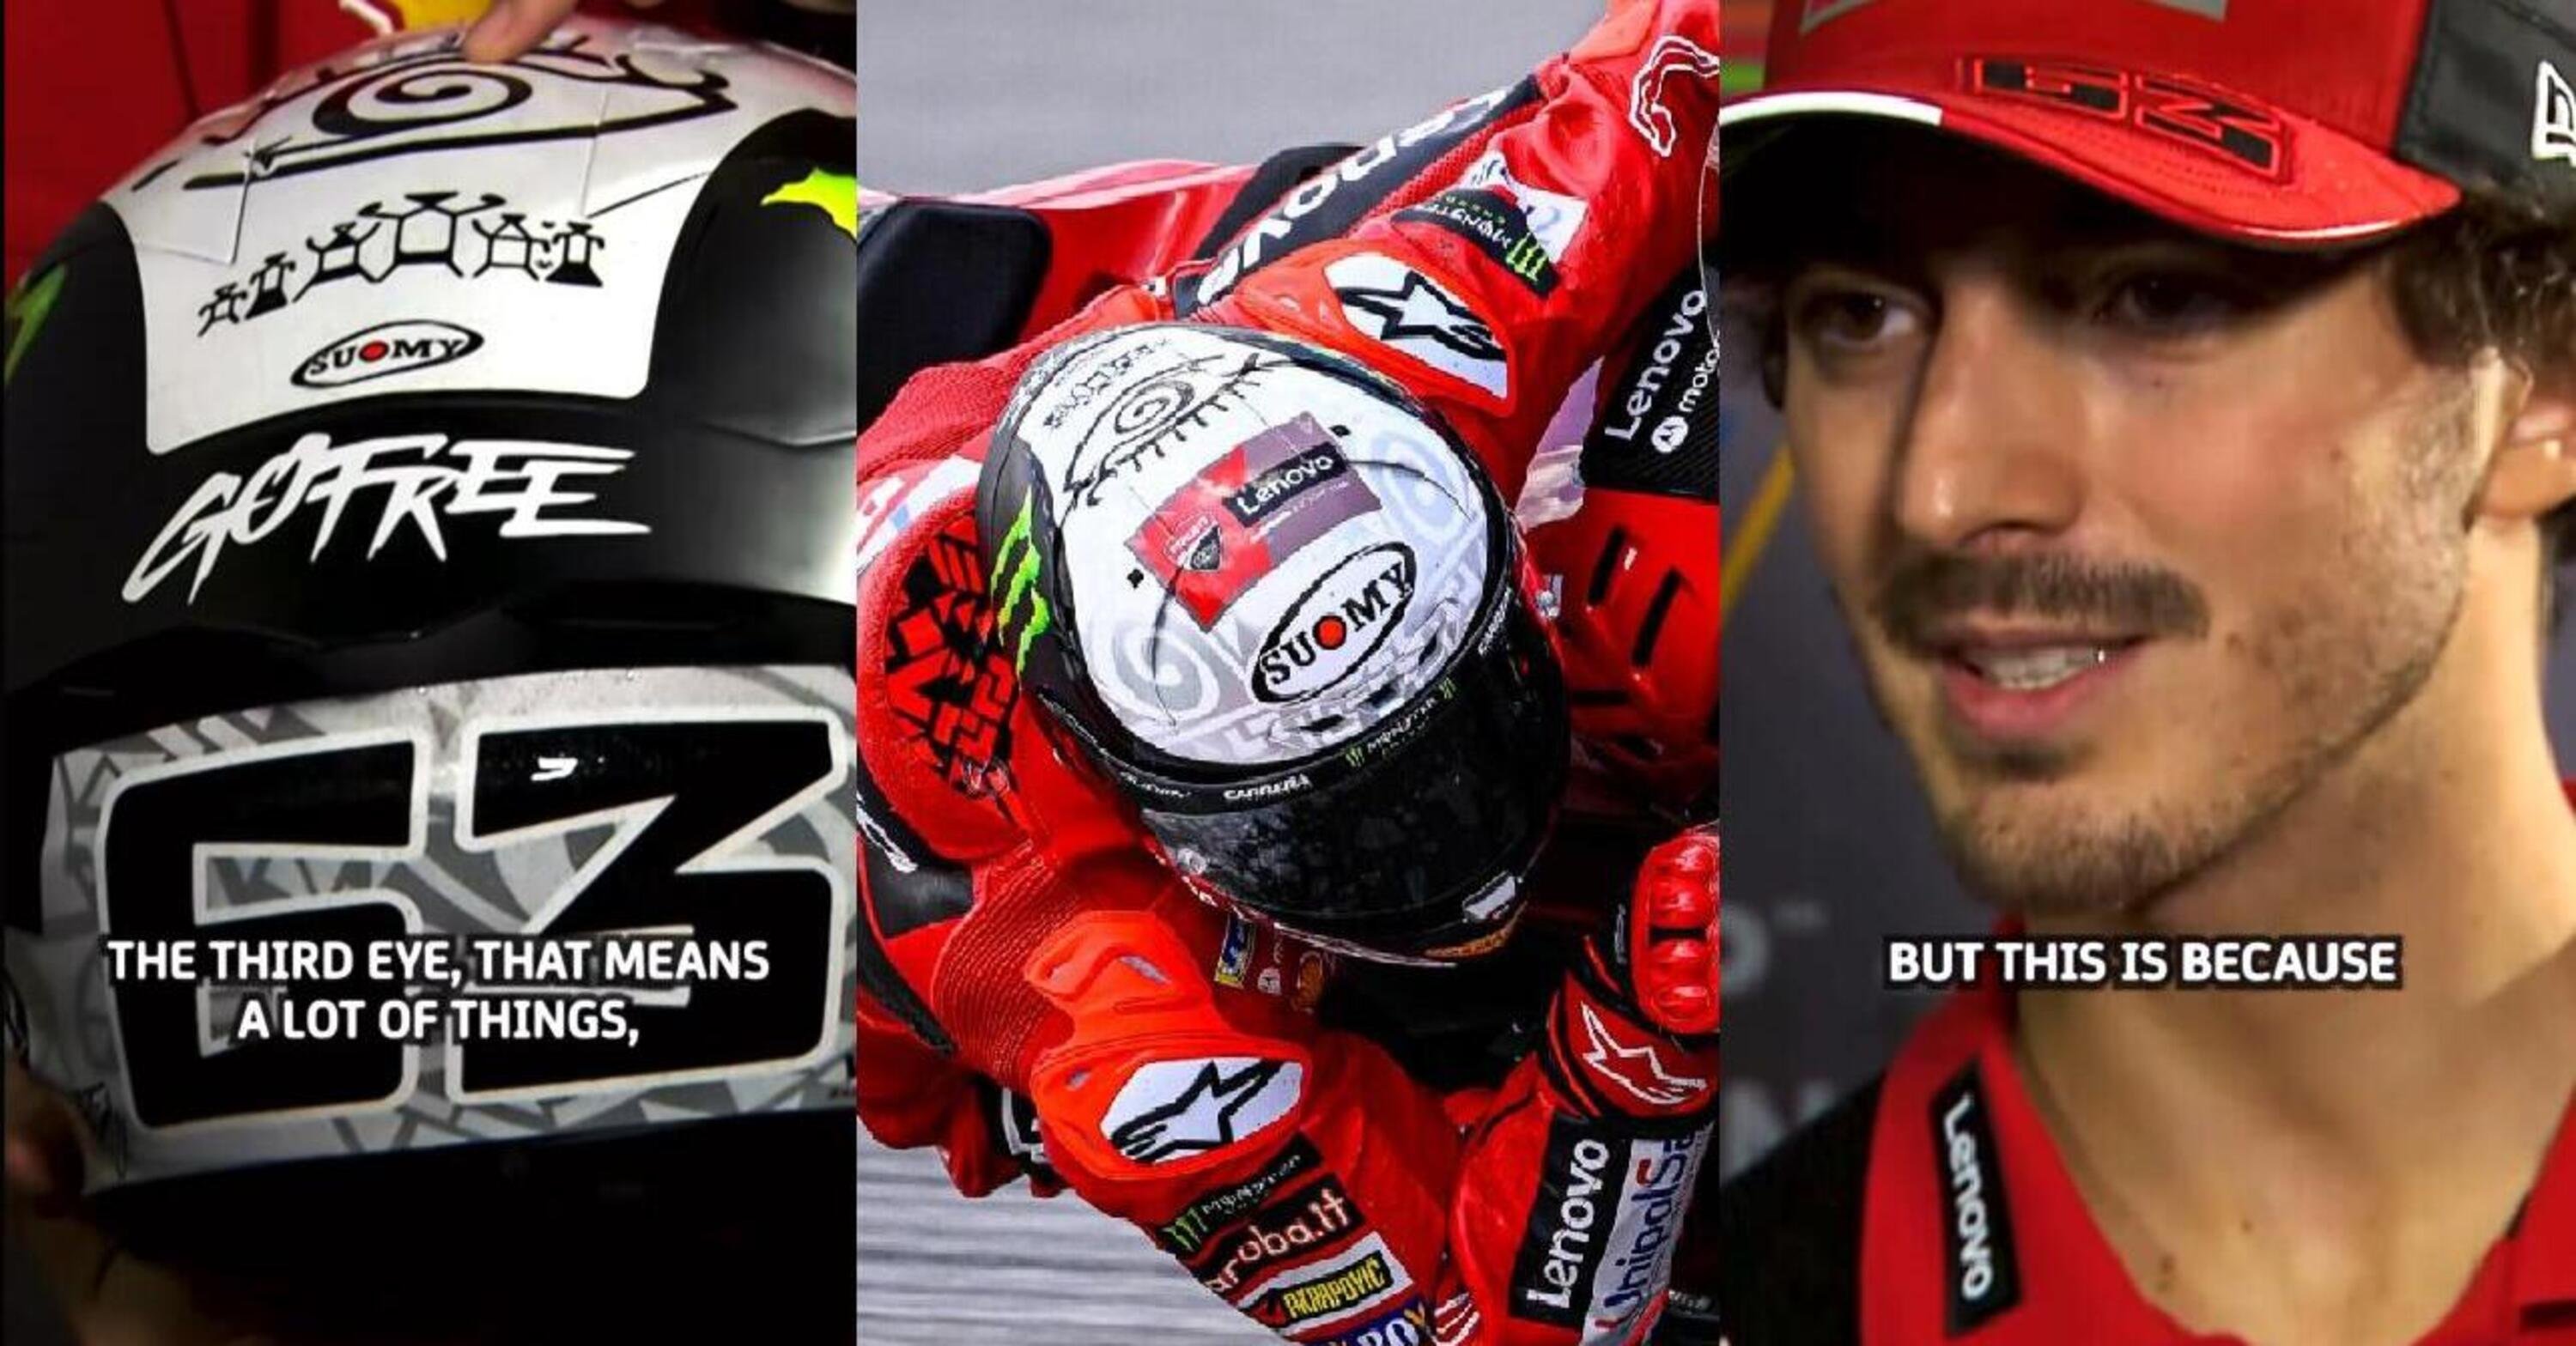 MotoGP 2023. Pecco Bagnaia racconta il suo casco: dalle due stelle al terzo occhio, quante storie! [VIDEO]